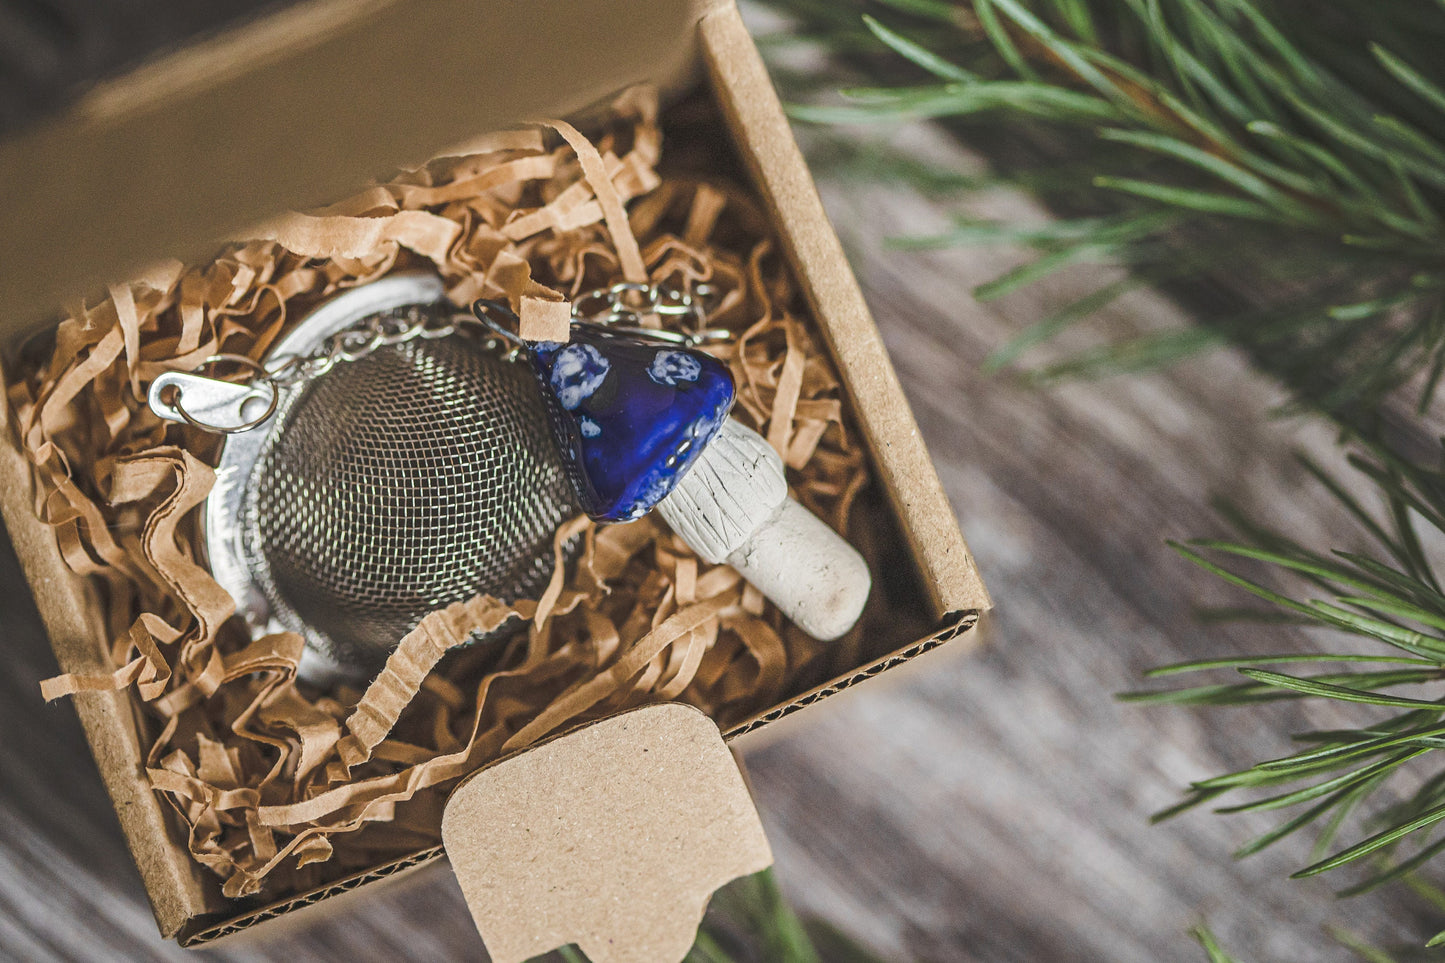 Loose leaf tea strainer with blue mushroom - Tea infuser with ceramic fungus - Christmas gift